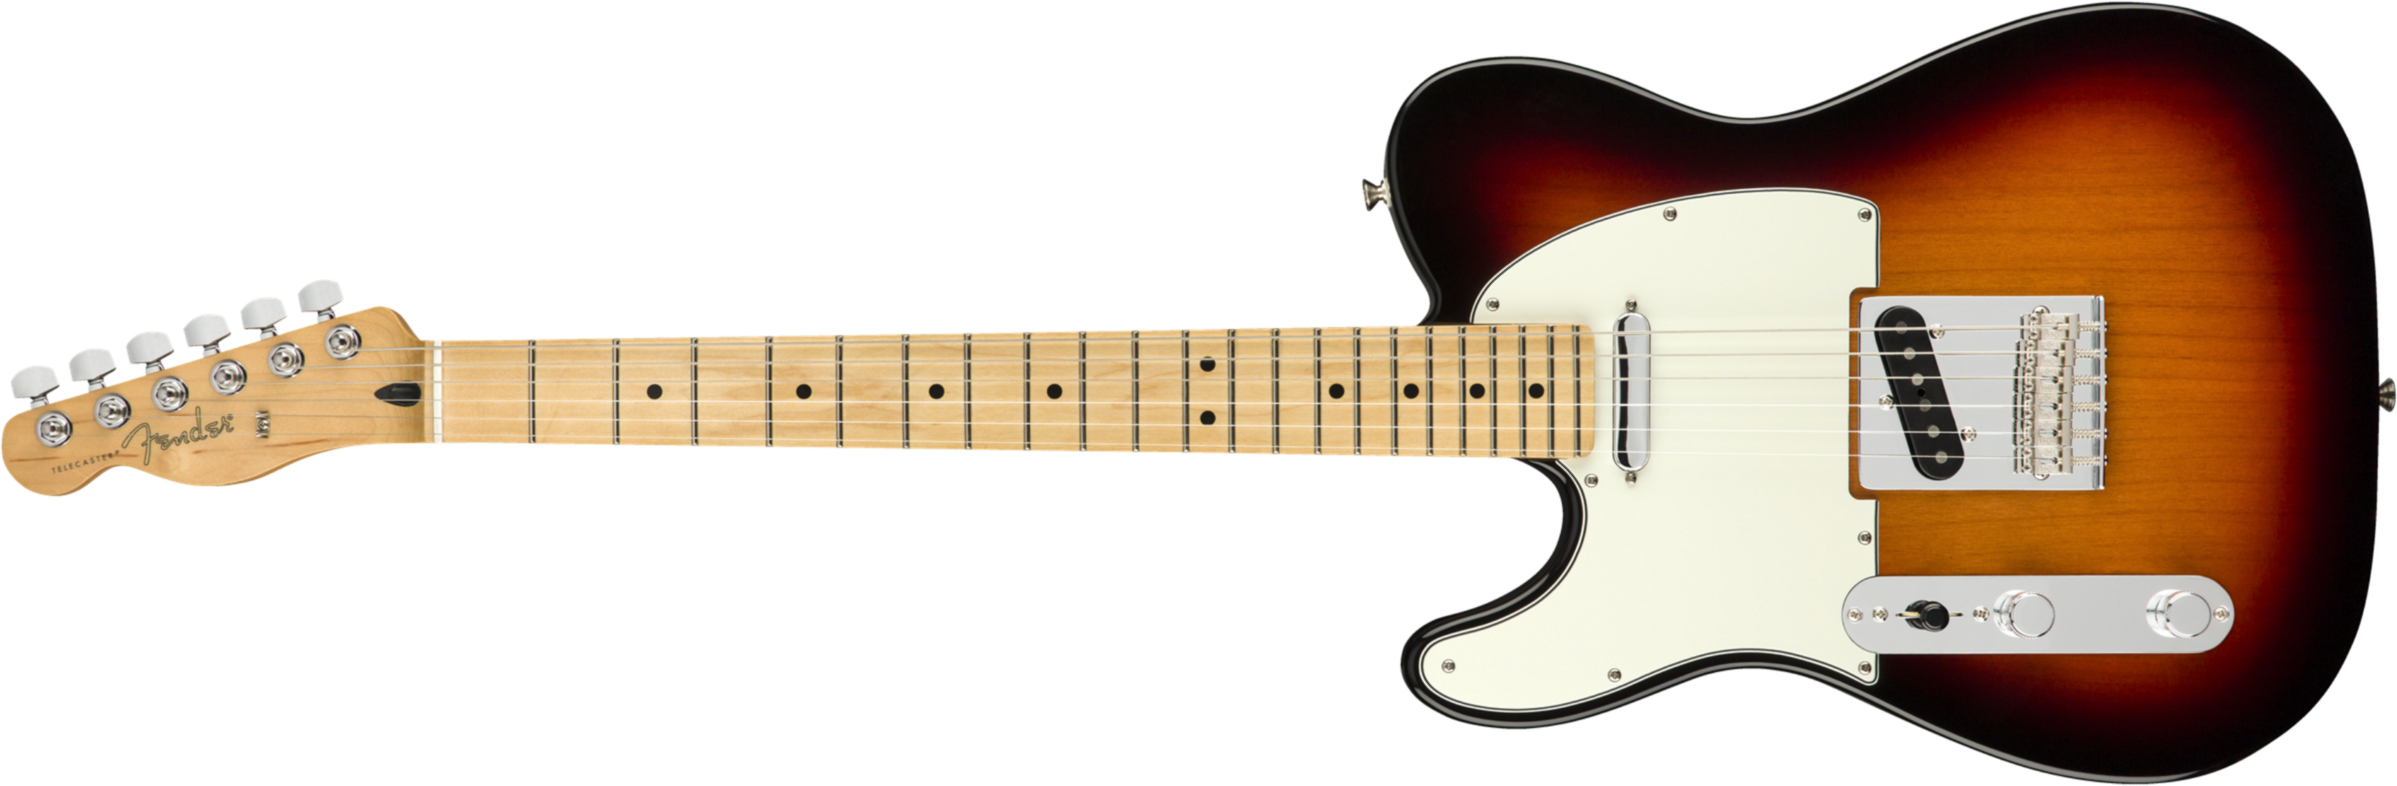 Fender Tele Player Lh Gaucher Mex Ss Mn - 3-color Sunburst - Linkshandige elektrische gitaar - Main picture